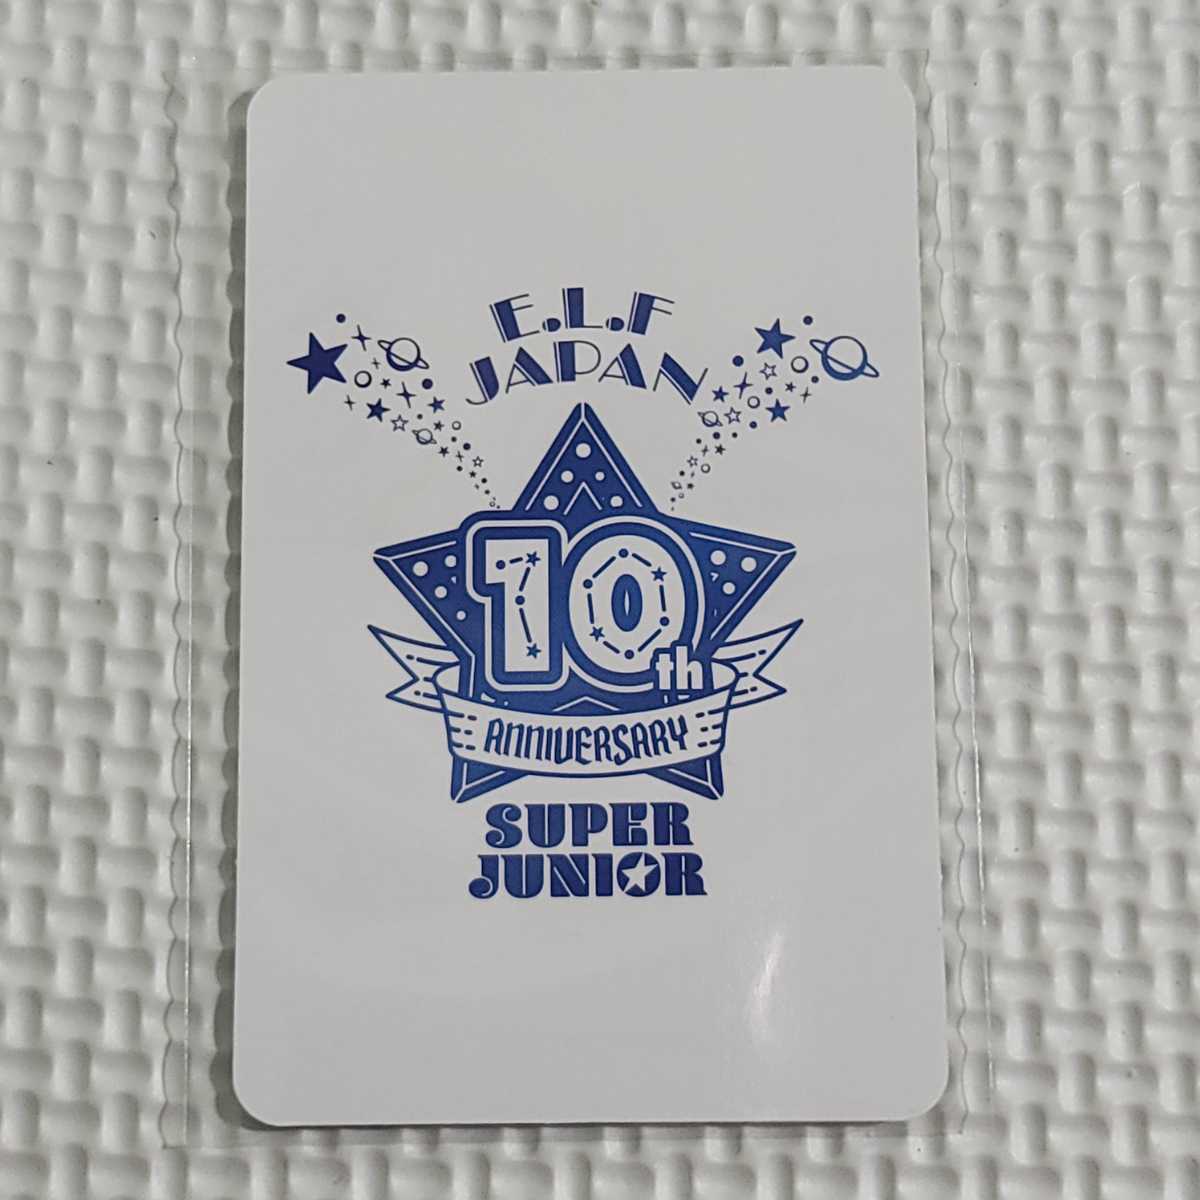 豊富なギフト SUPER JUNIOR E.L.F-JAPAN 入会特典 キュヒョン トレカ